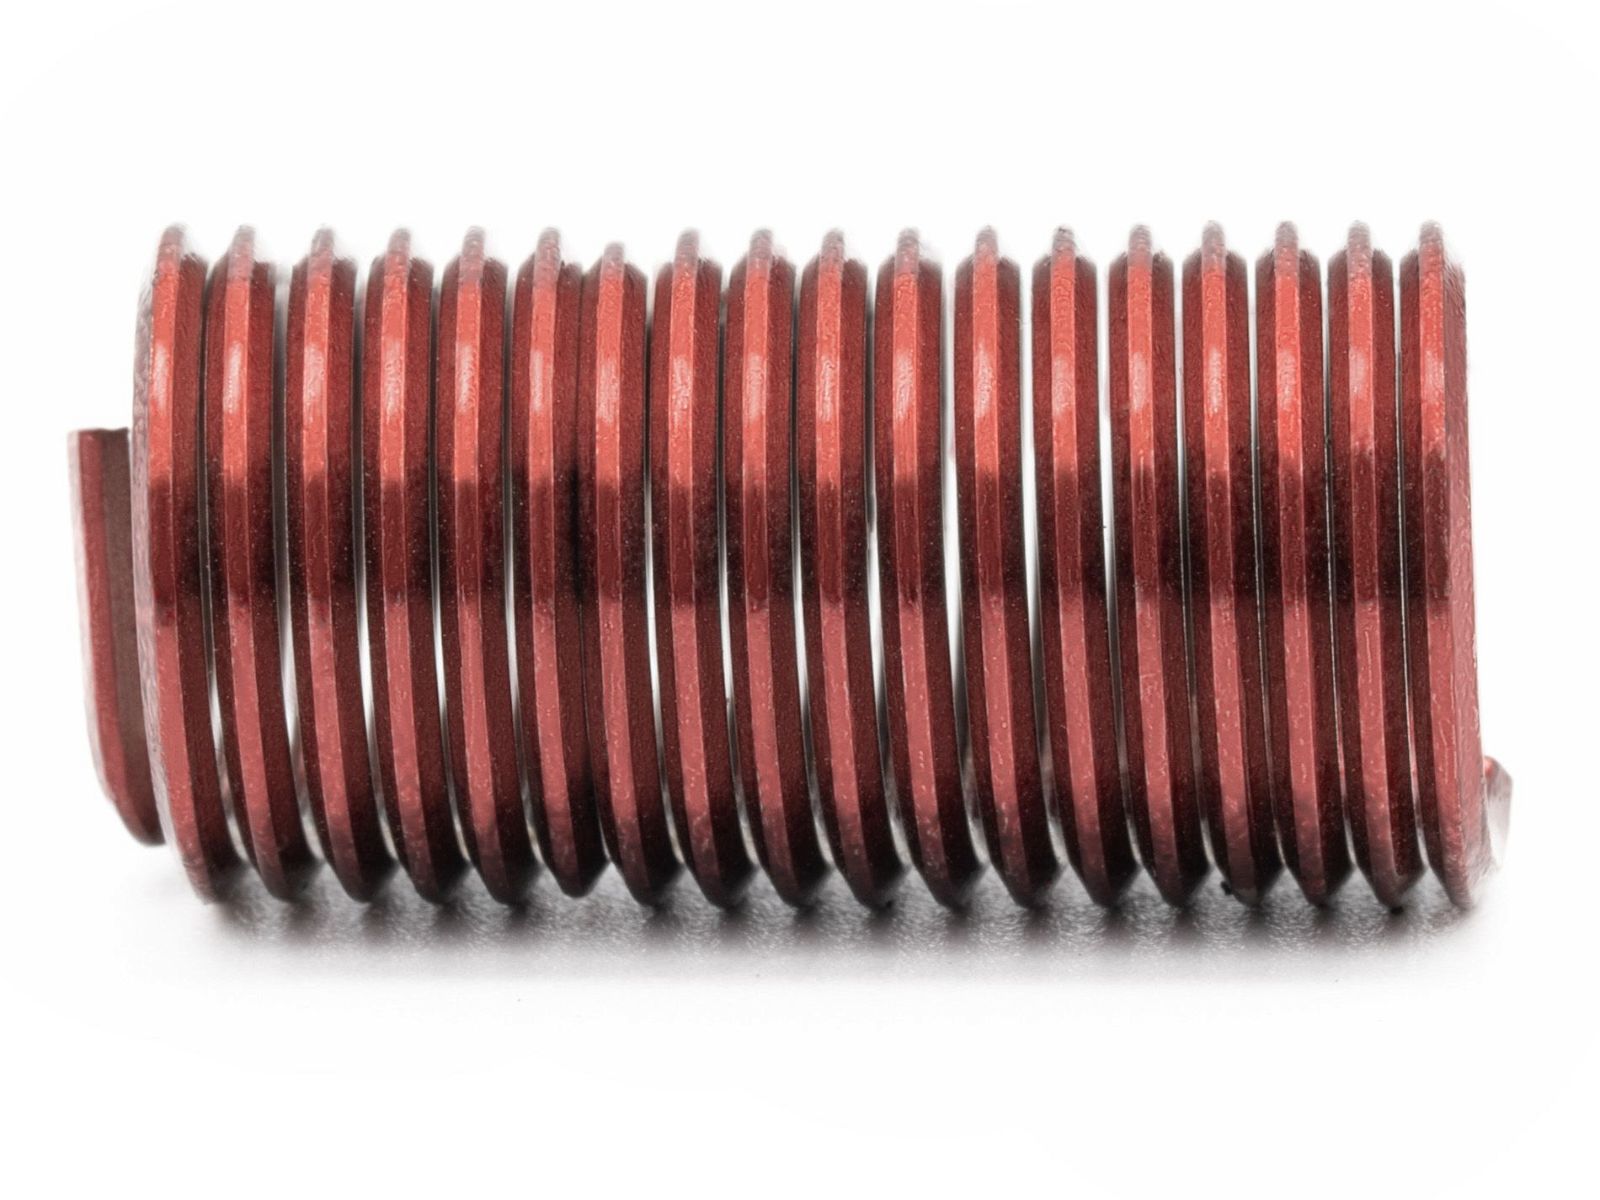 BaerCoil Wire Thread Inserts M 16 x 2.0 - 3.0 D (48 mm) - screw grip (screw locking) - 50 pcs.